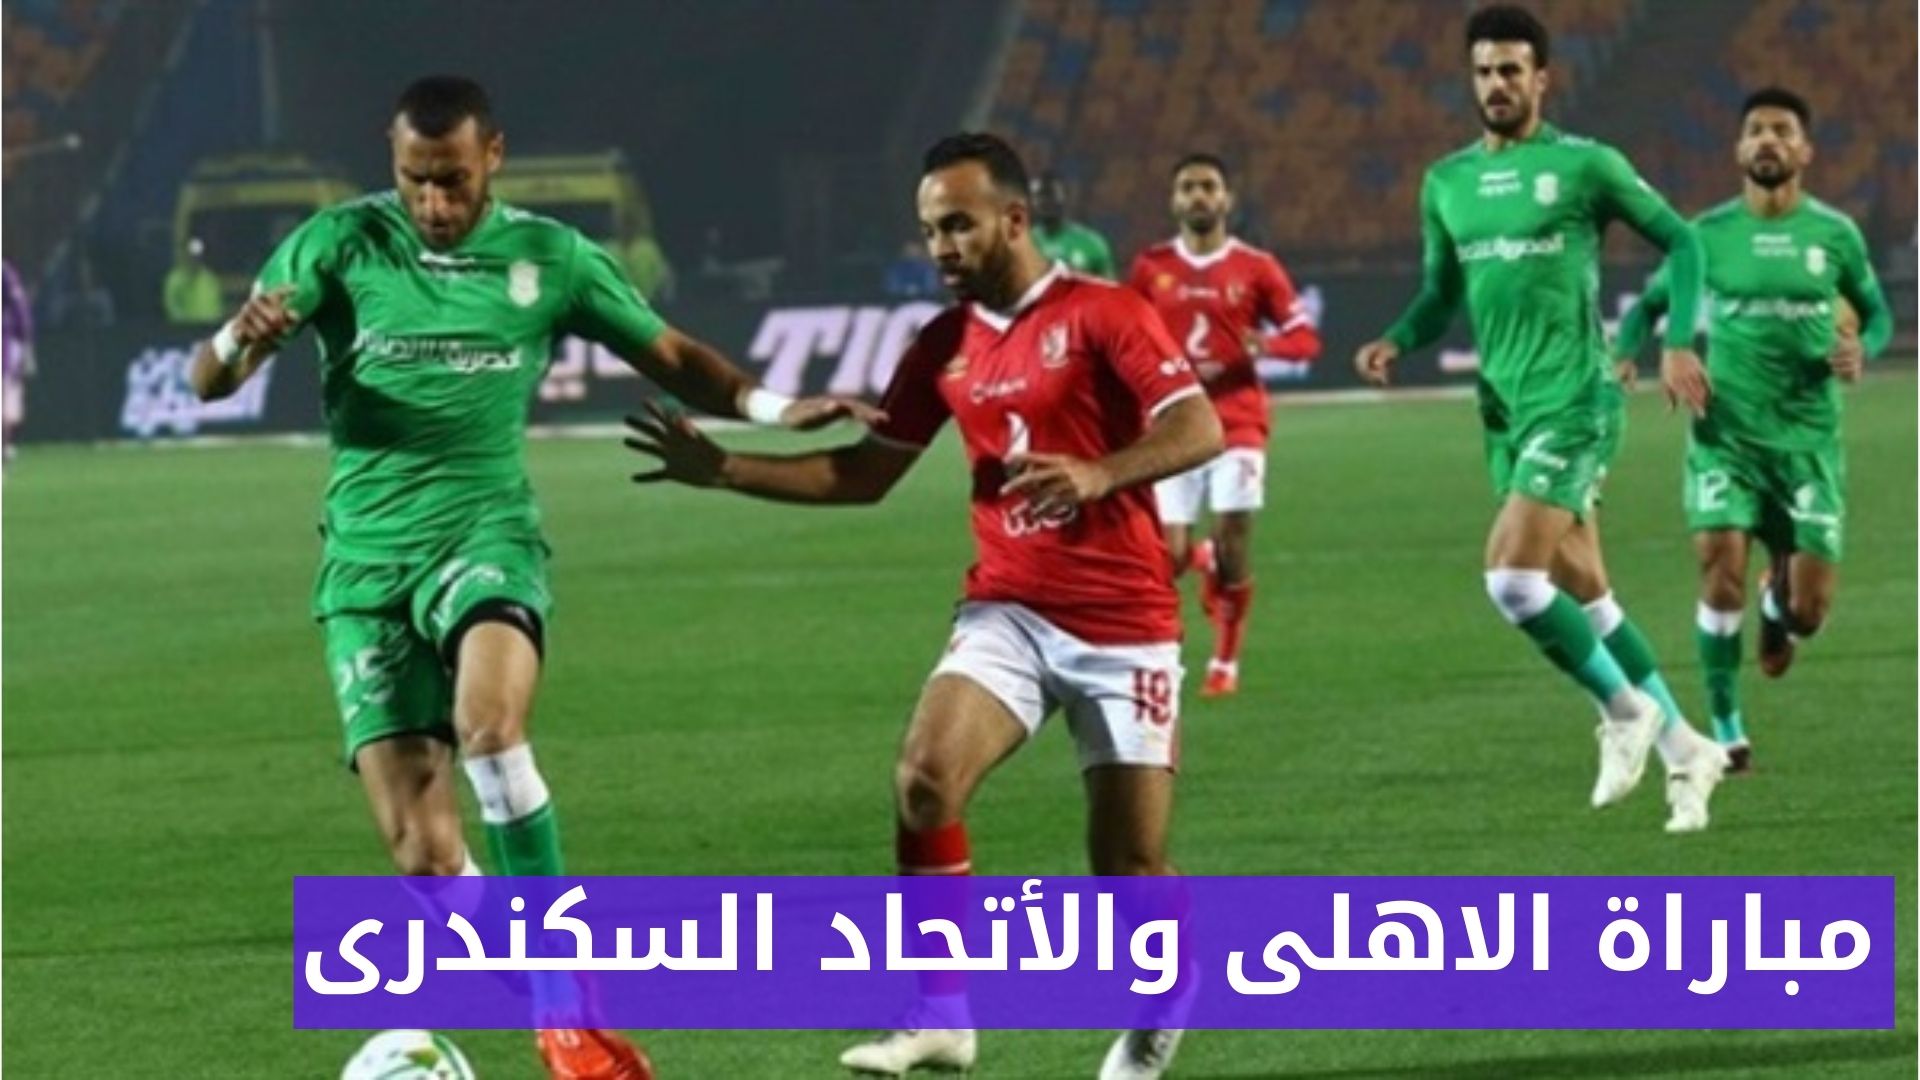 موعد مباراة الأهلي والاتحاد السكندري في الدوري المصري اليوم